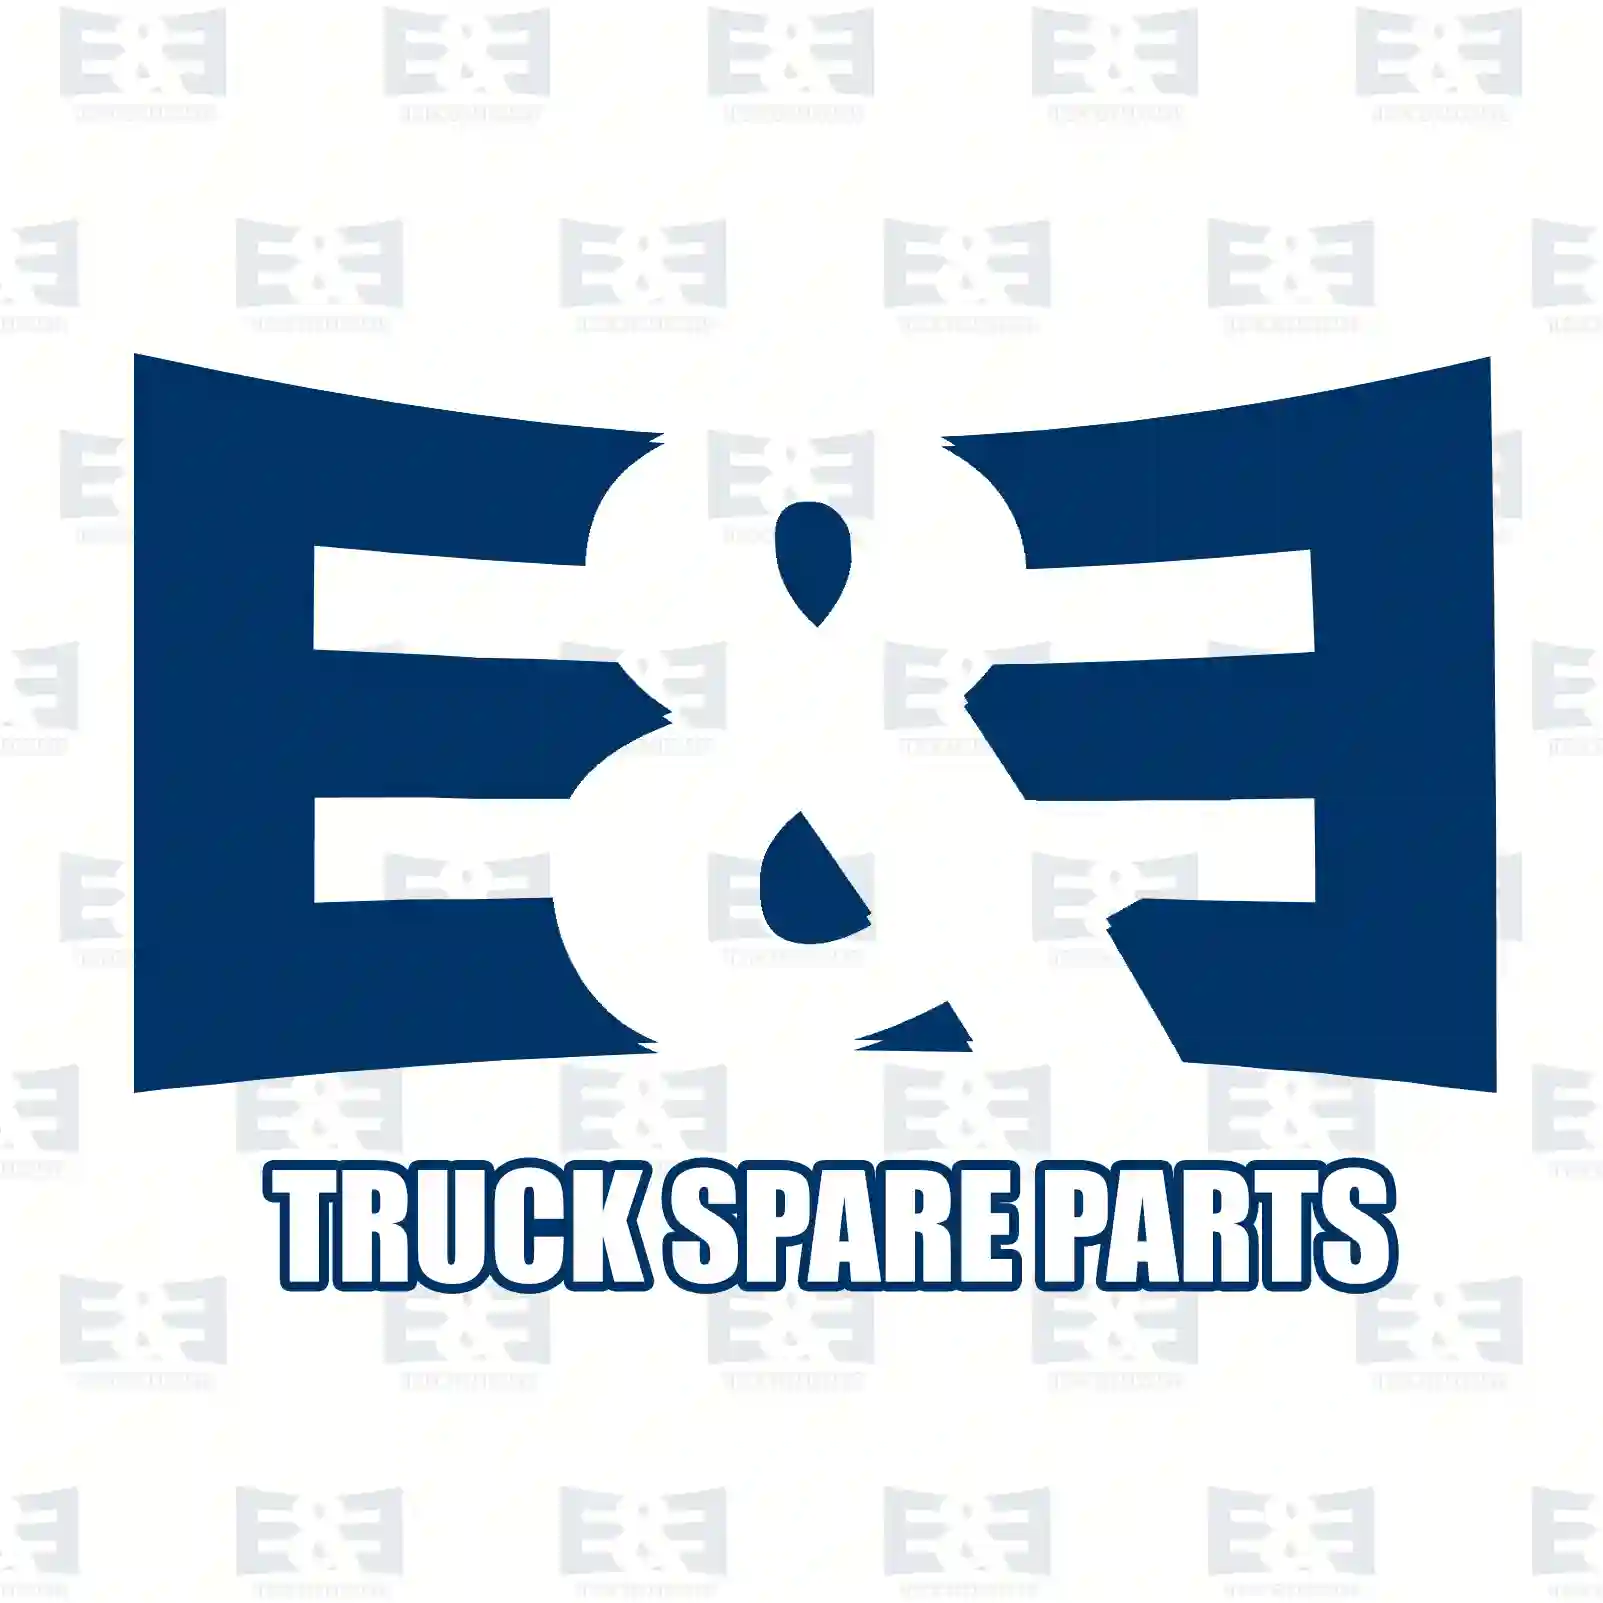 Propeller shaft, 2E2276869, 7401067765, 10677 ||  2E2276869 E&E Truck Spare Parts | Truck Spare Parts, Auotomotive Spare Parts Propeller shaft, 2E2276869, 7401067765, 10677 ||  2E2276869 E&E Truck Spare Parts | Truck Spare Parts, Auotomotive Spare Parts